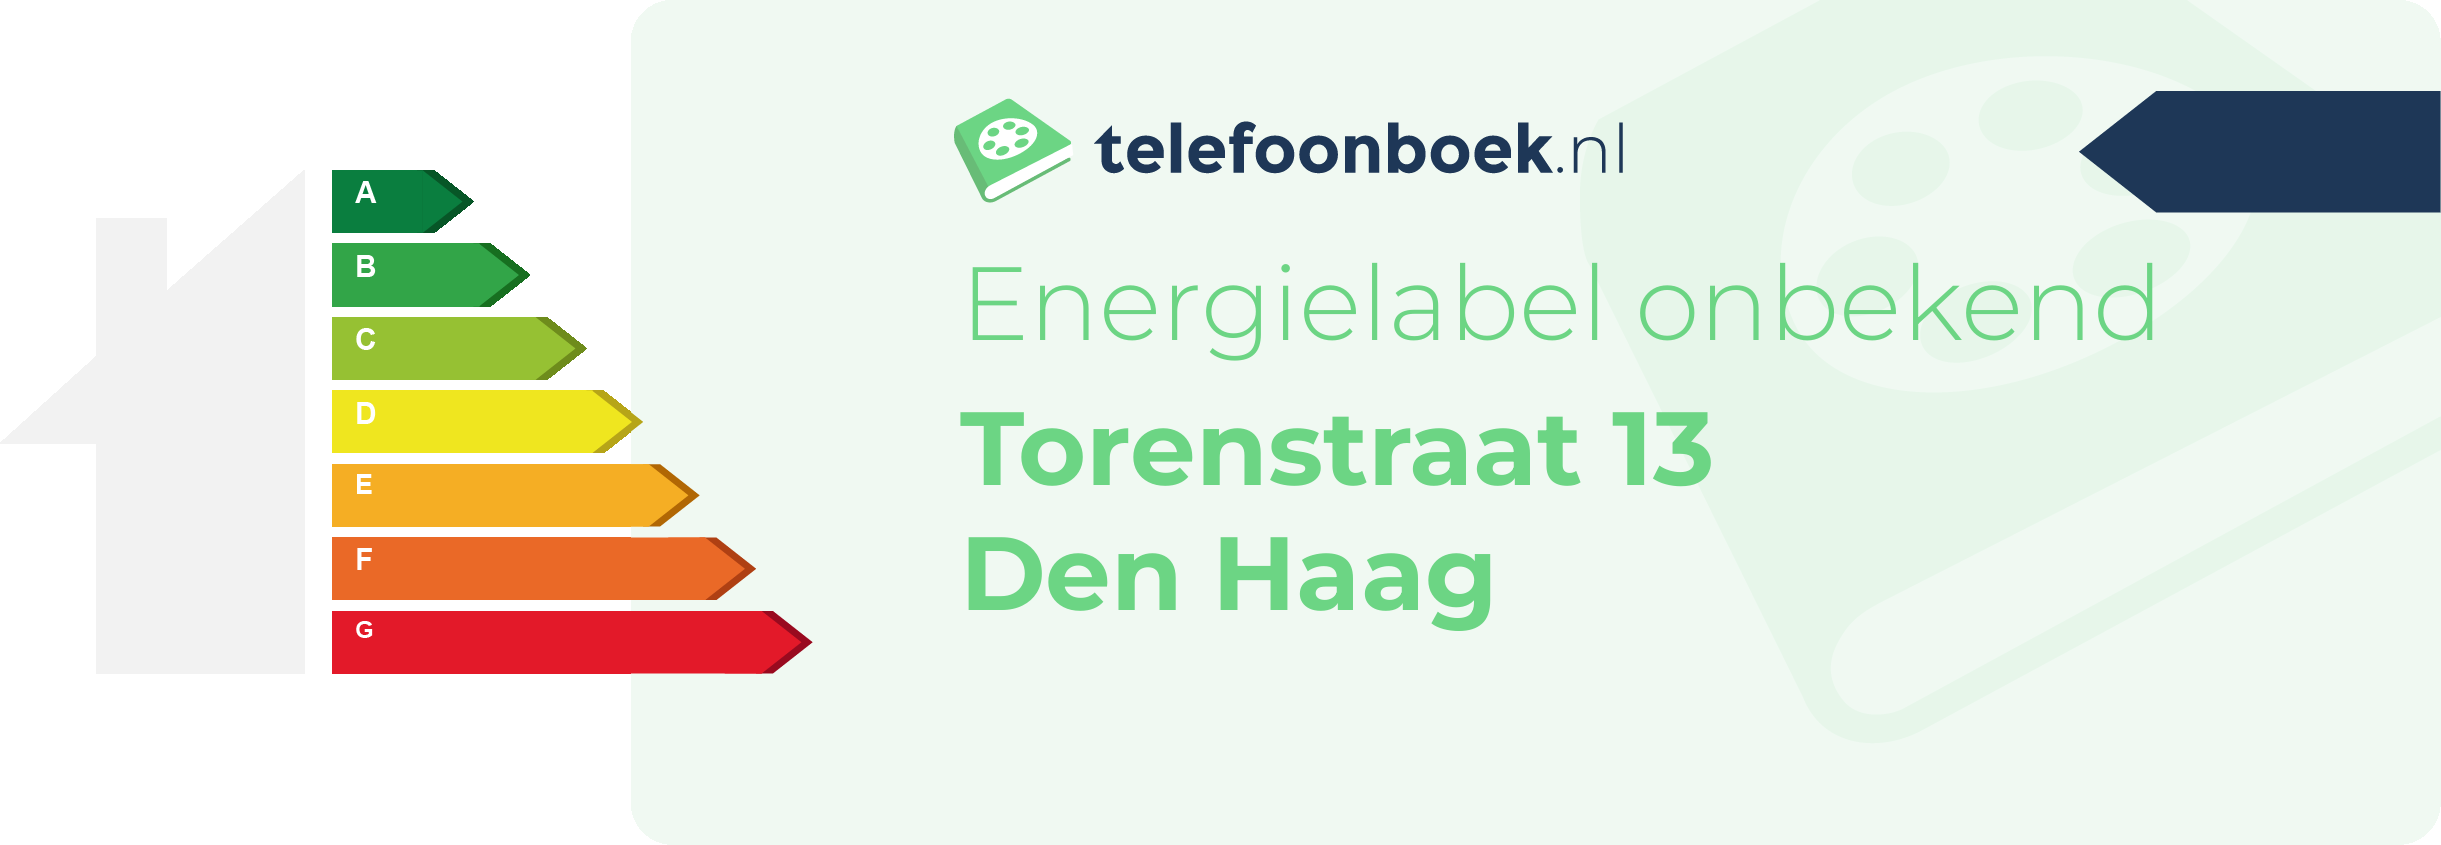 Energielabel Torenstraat 13 Den Haag